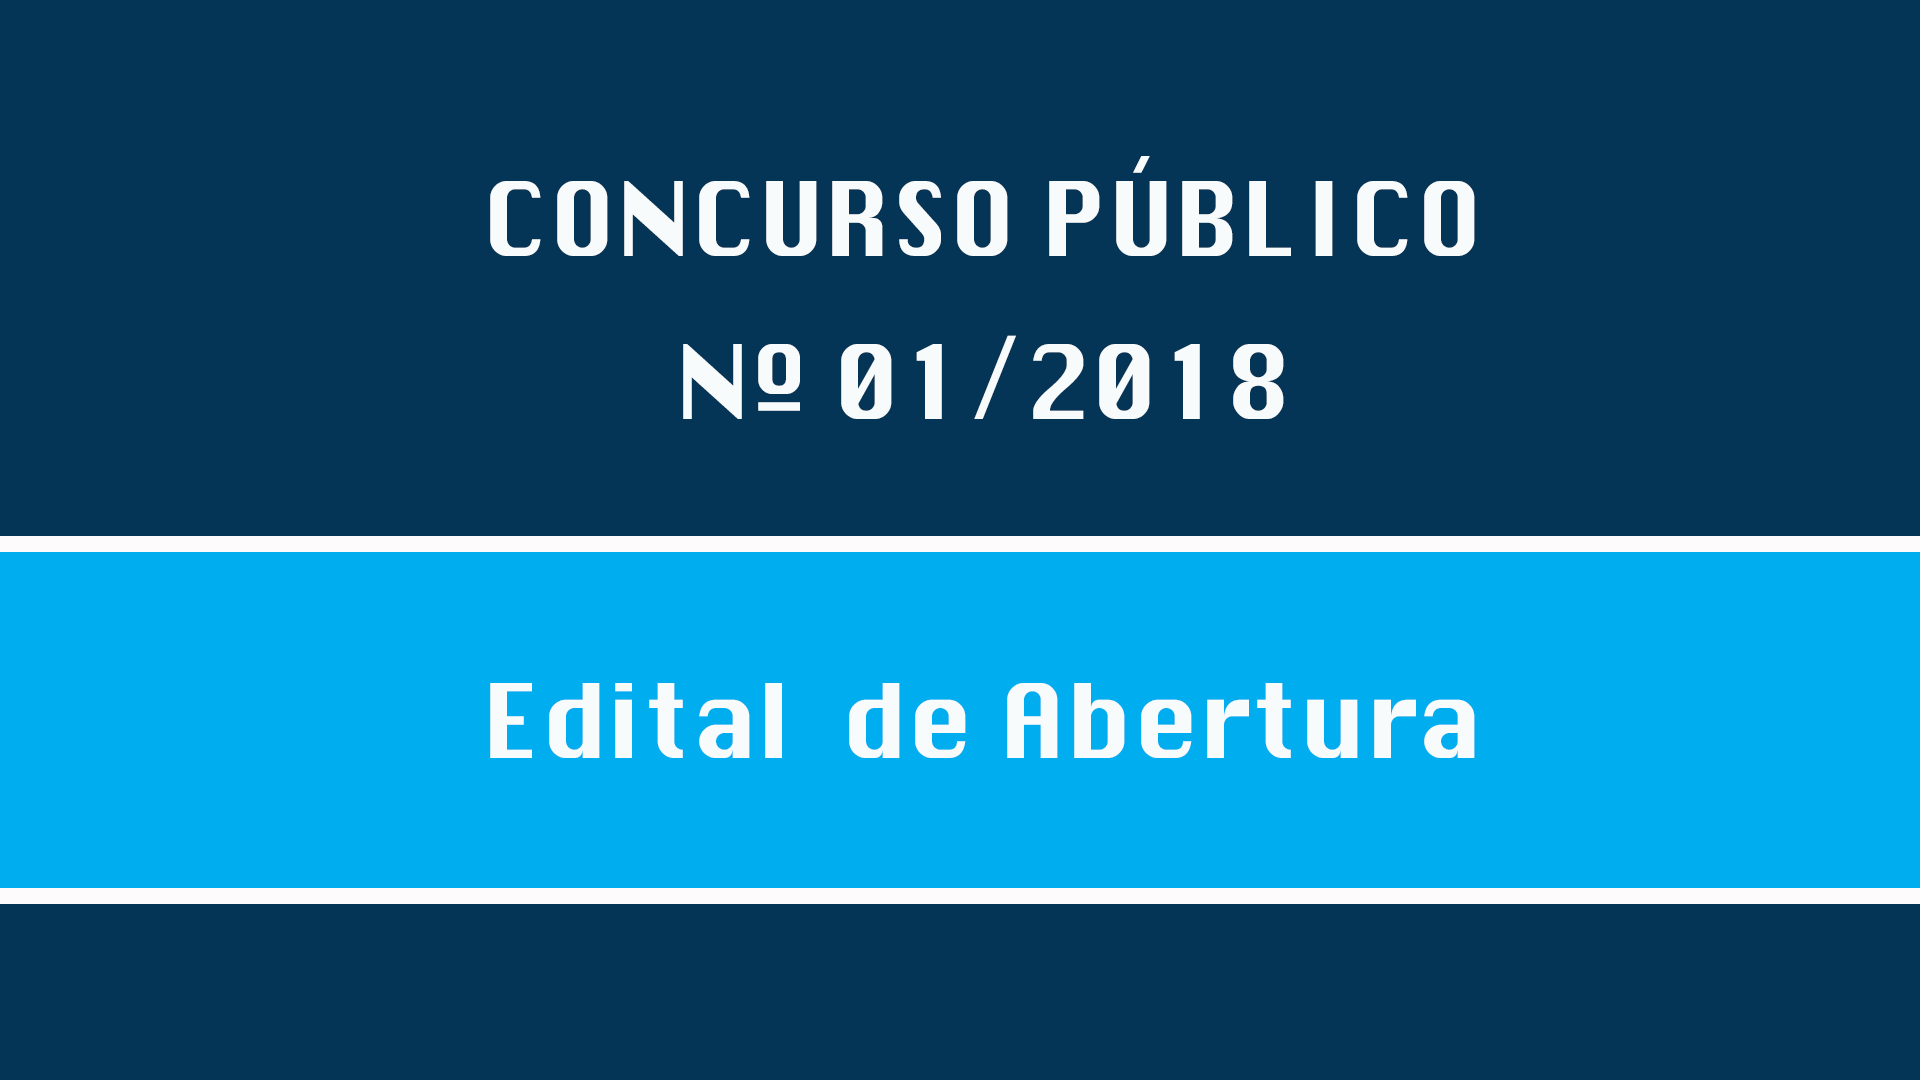 CONCURSO PÚBLICO Nº 001/2018 - EDITAL DE ABERTURA